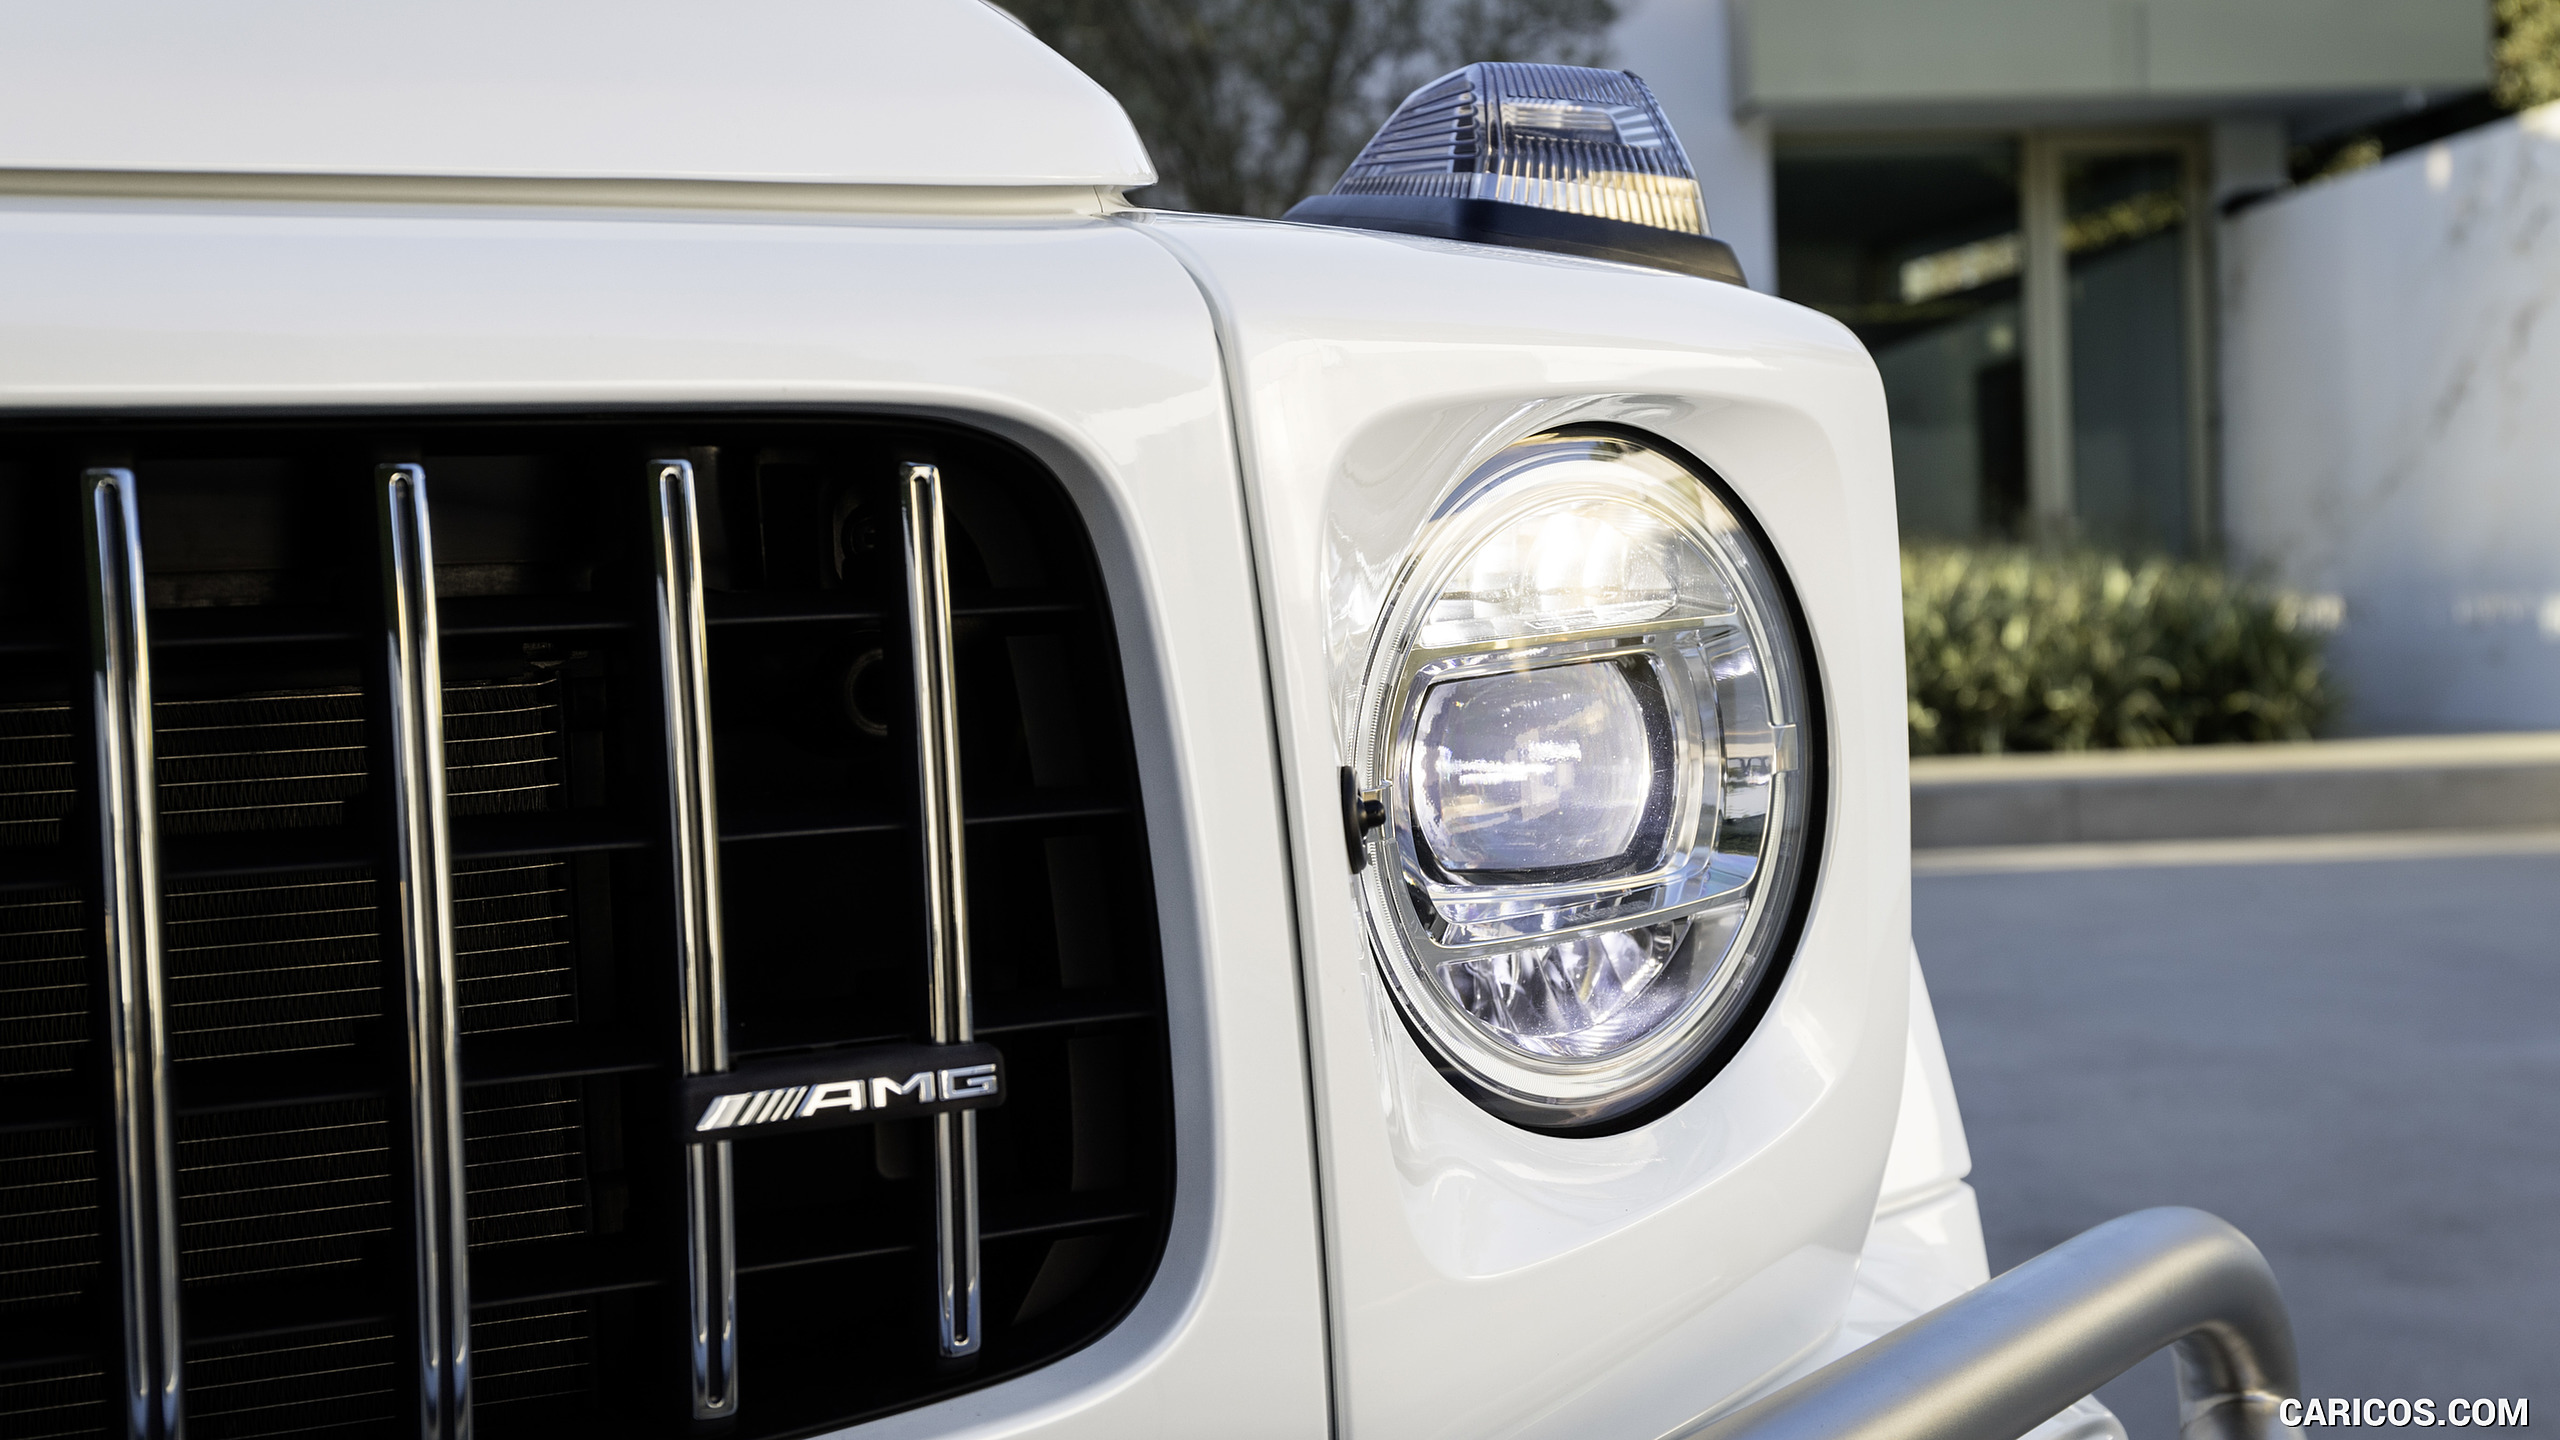 2019 Mercedes-AMG G63 (Color: Designo Mystic White Bright) - Headlight, #32 of 452